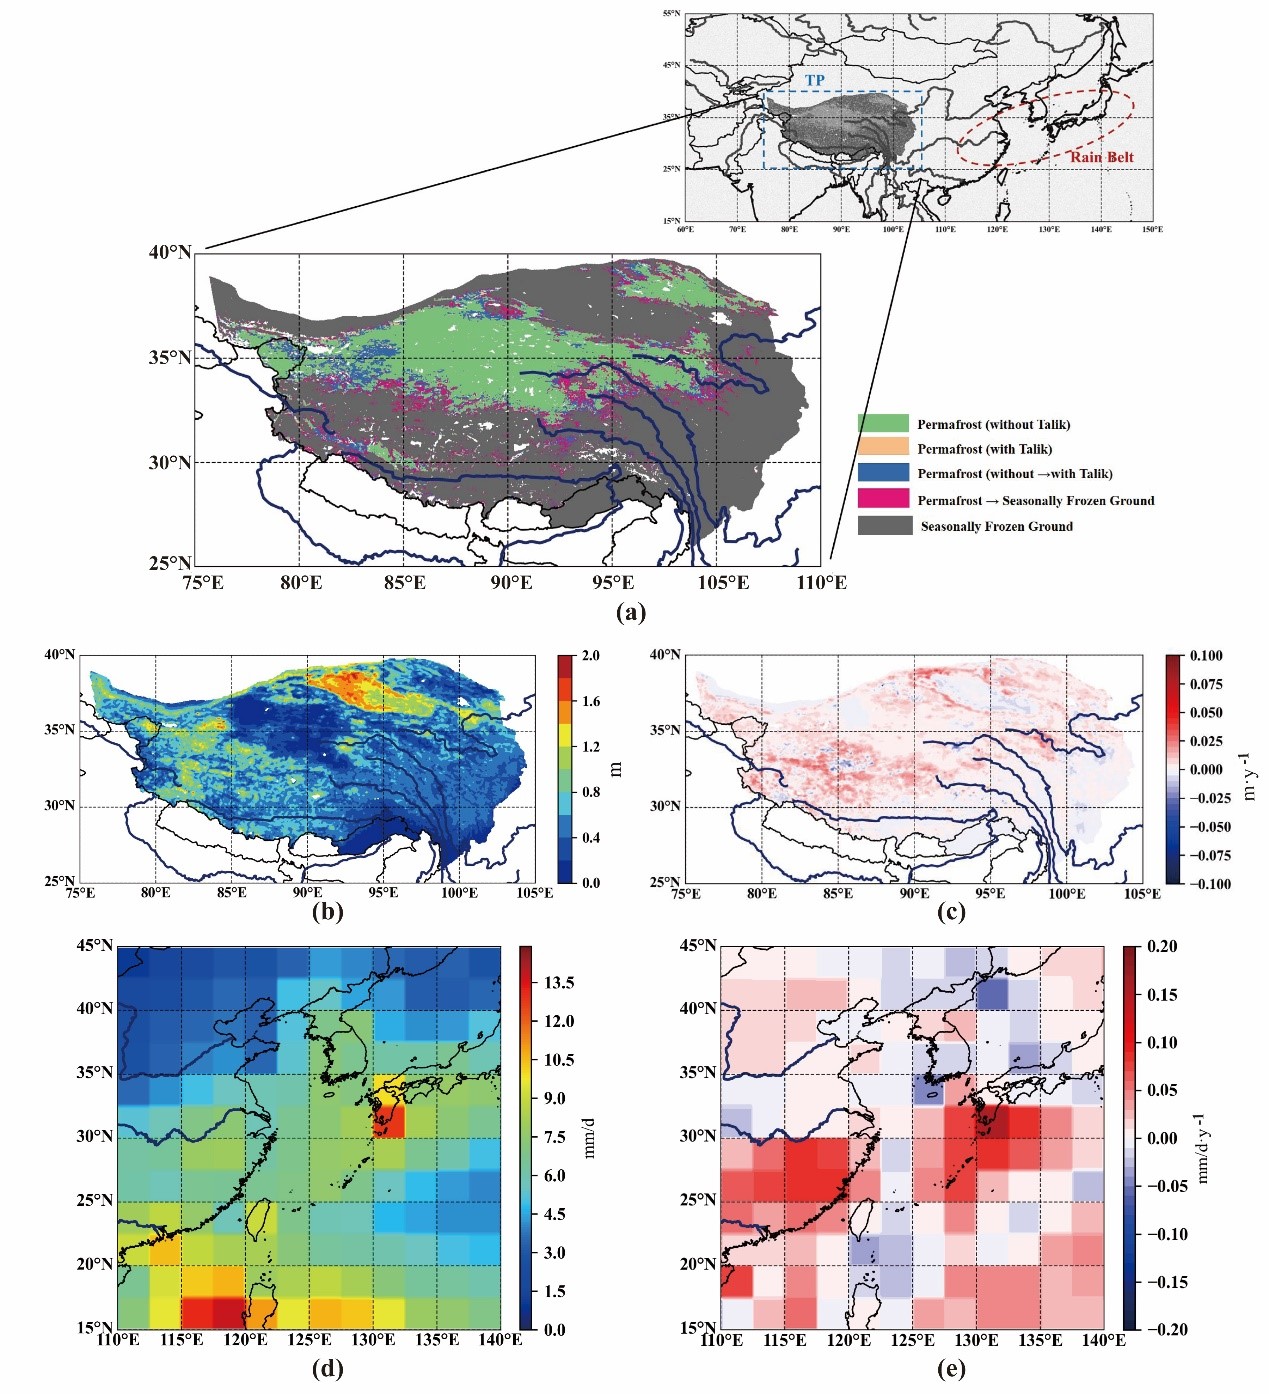 20211110-最新研究揭示青藏高原夏前冻土融化异常与东亚梅雨关系-未知名-图片1.jpg